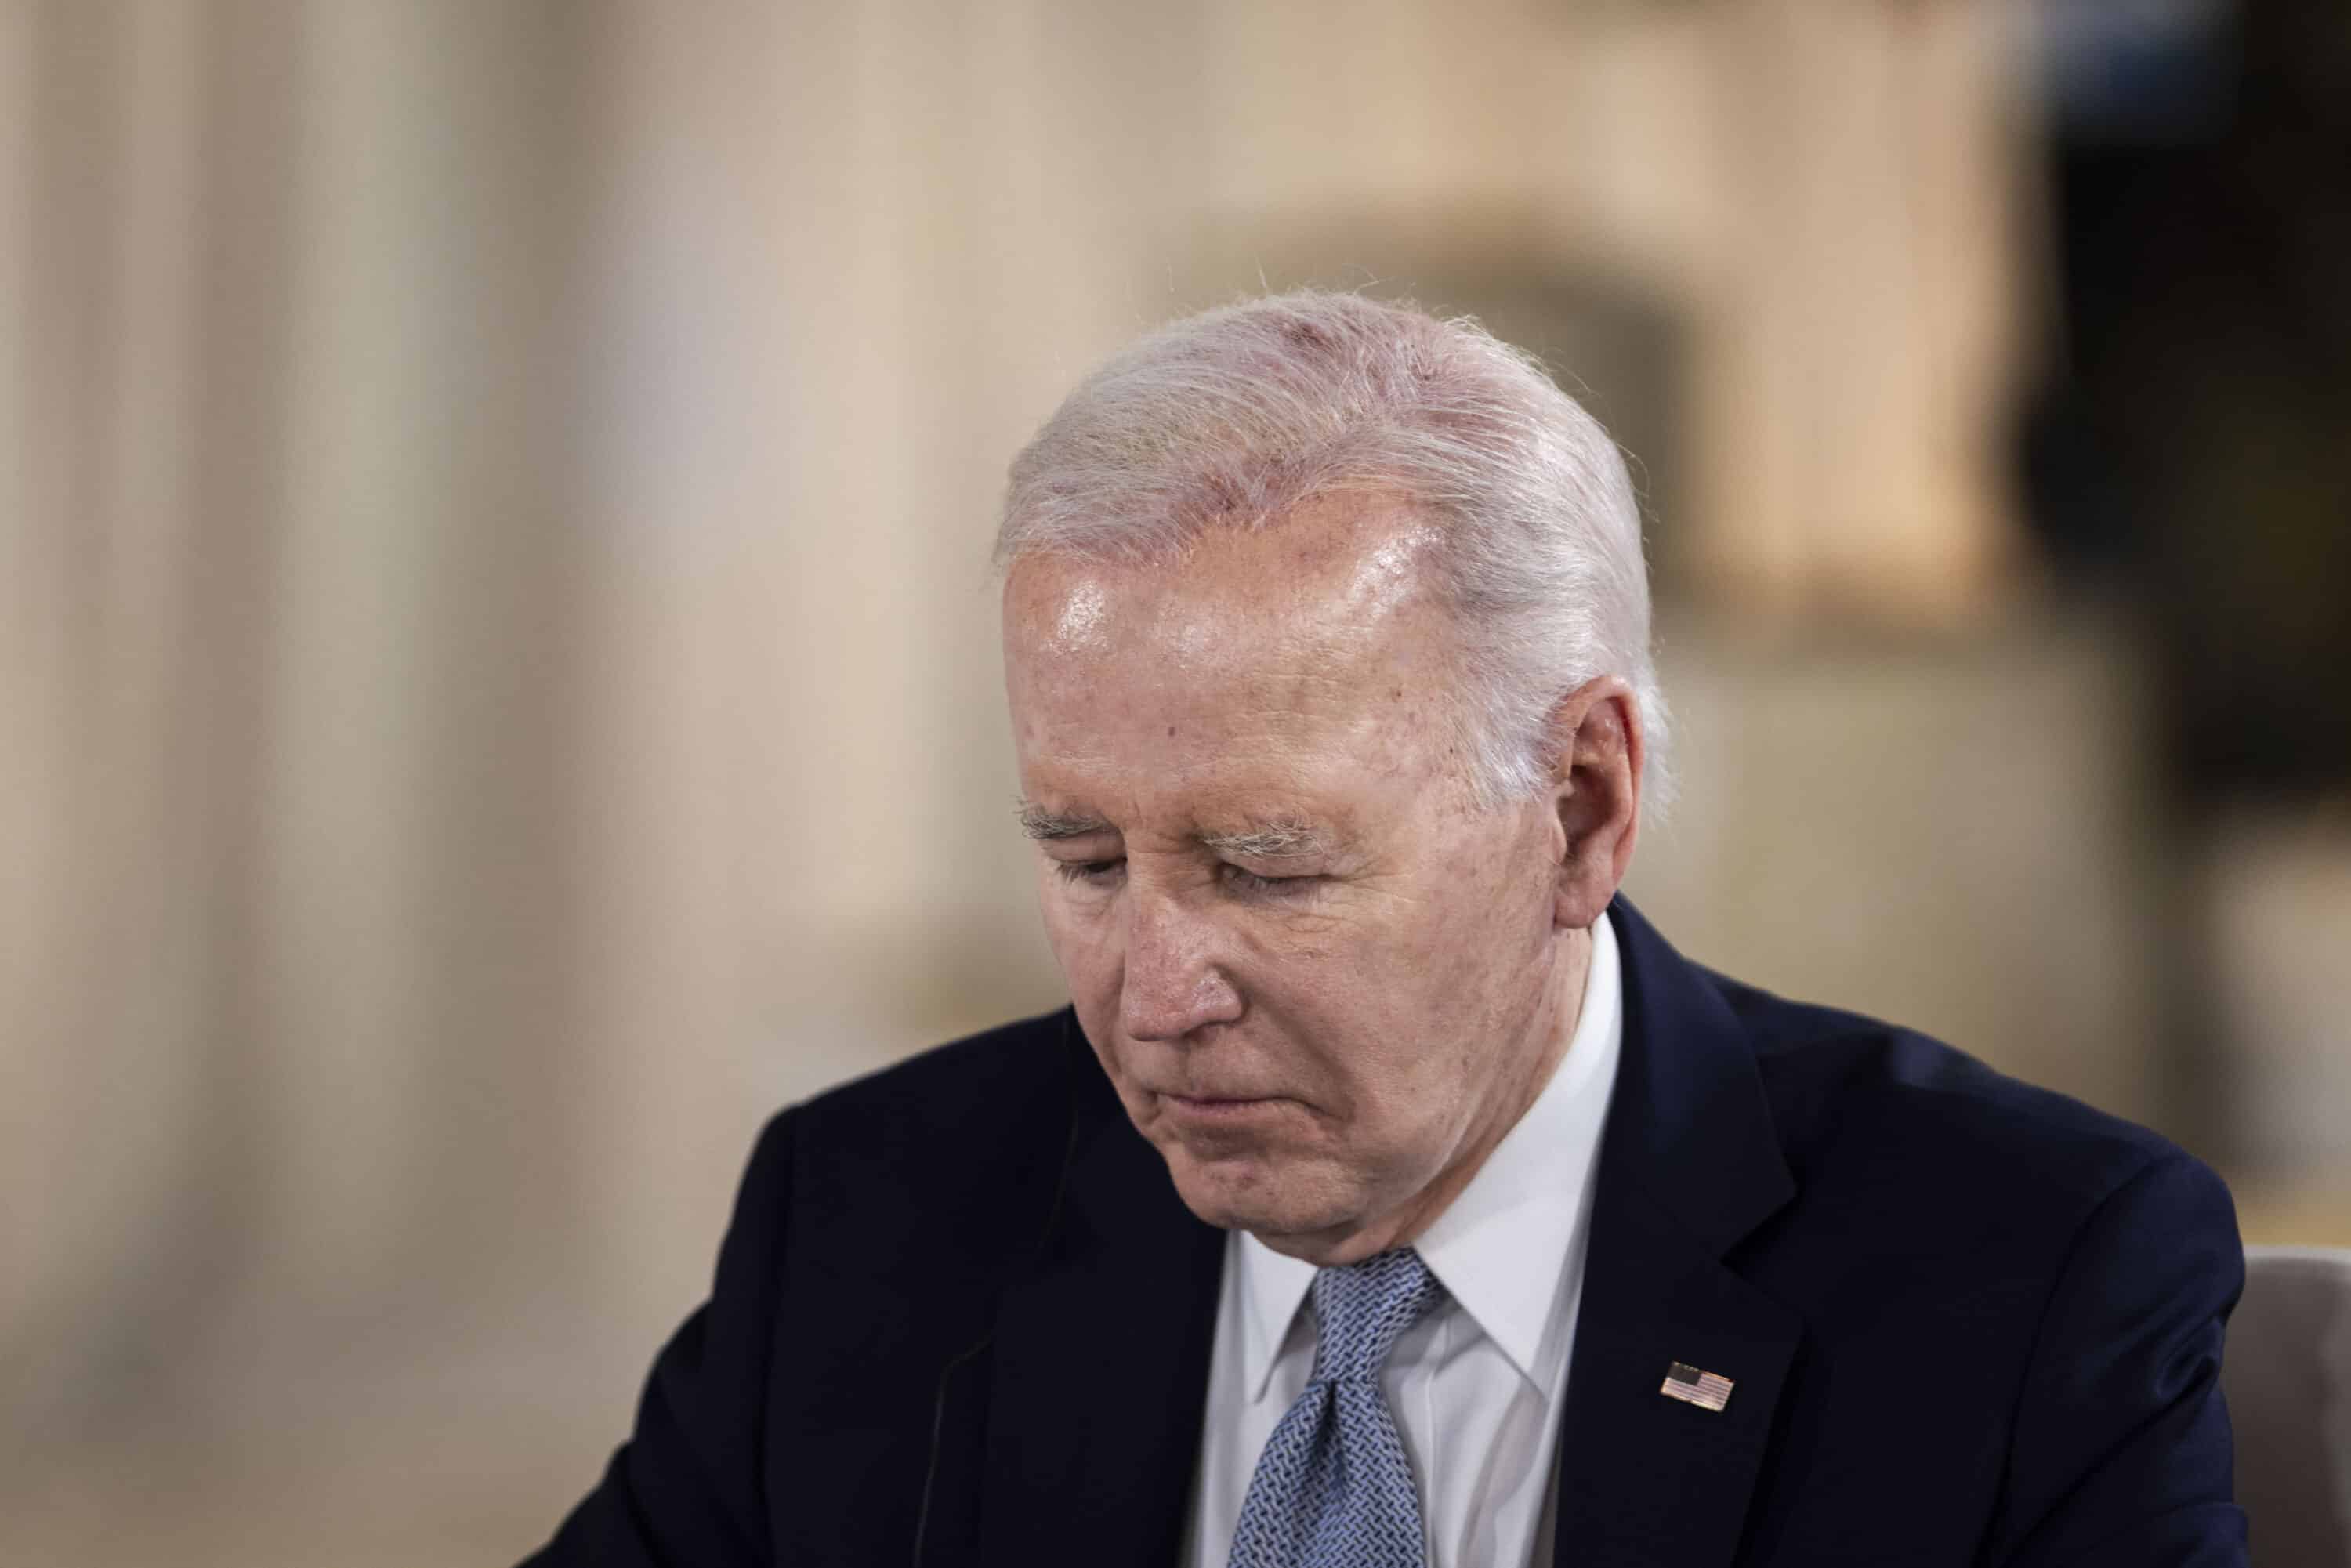 “Da Biden disastro senza appello, ora deve lasciare il passo a Harris”: parla Alcaro (Iai)